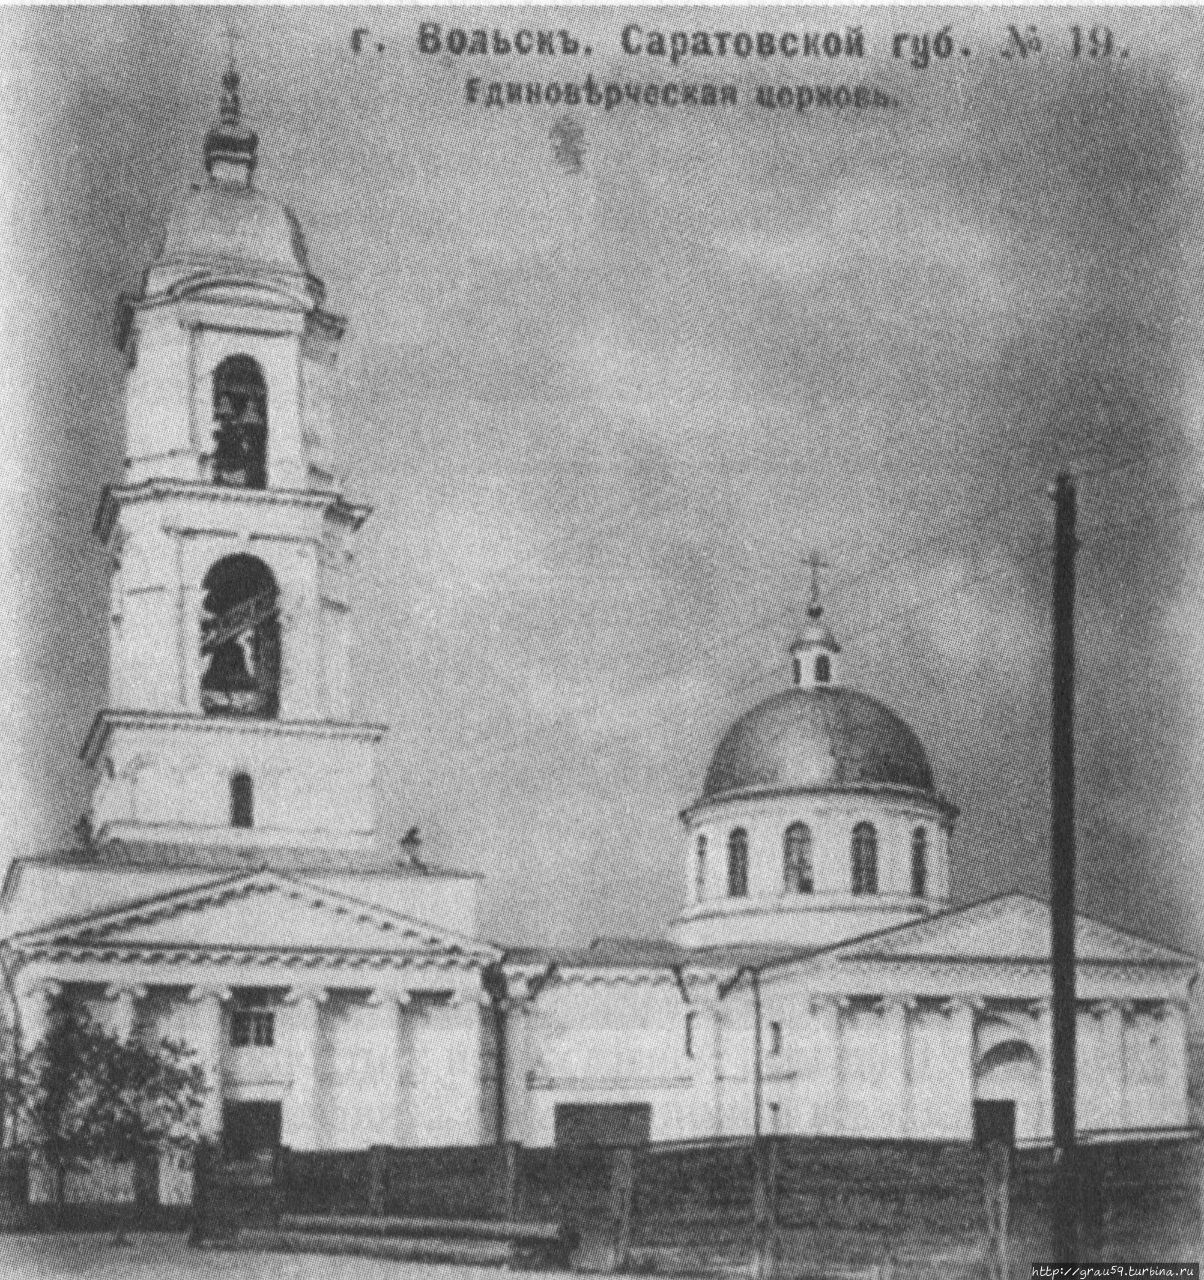 Единоверческая церковь , фото с сайта oldsaratov.ru Вольск, Россия